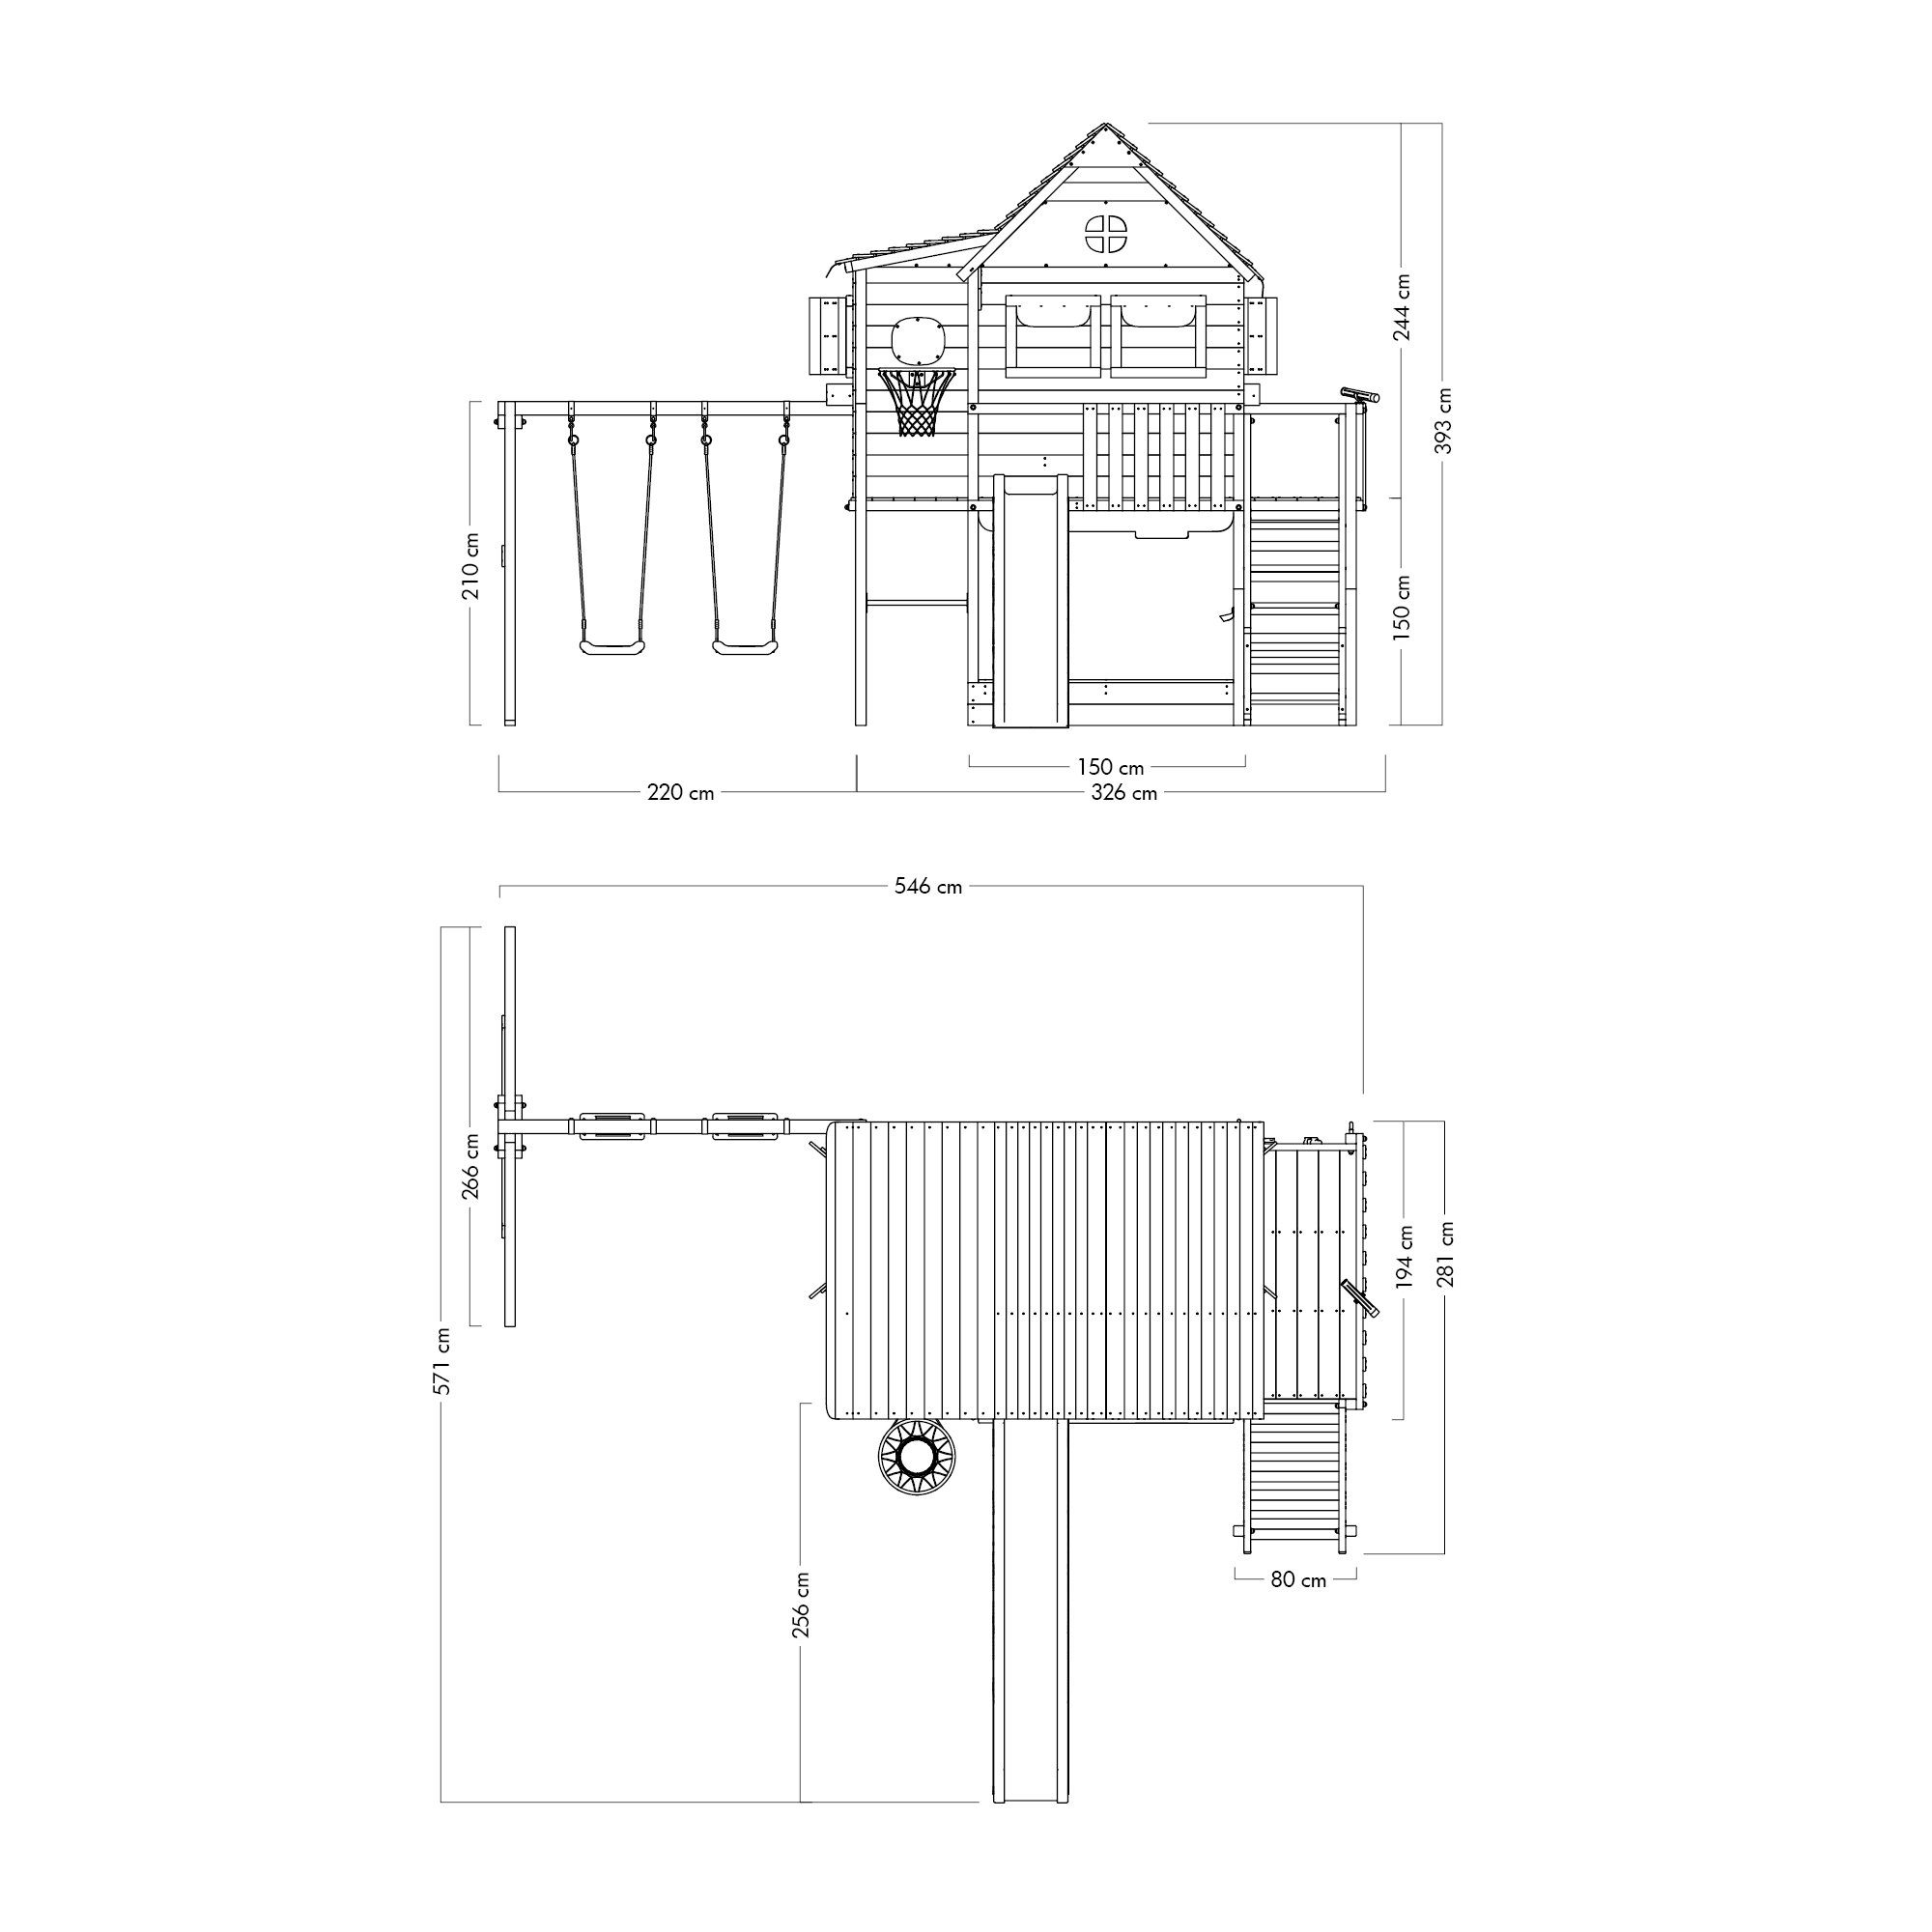 Wickey Klettergerüst Stelzenhaus Smart GreenHouse & grün Garantie*, Treppe Schaukel Großes Handlauf Spielhaus, mit mit Massive Rutsche, 10-Jahre